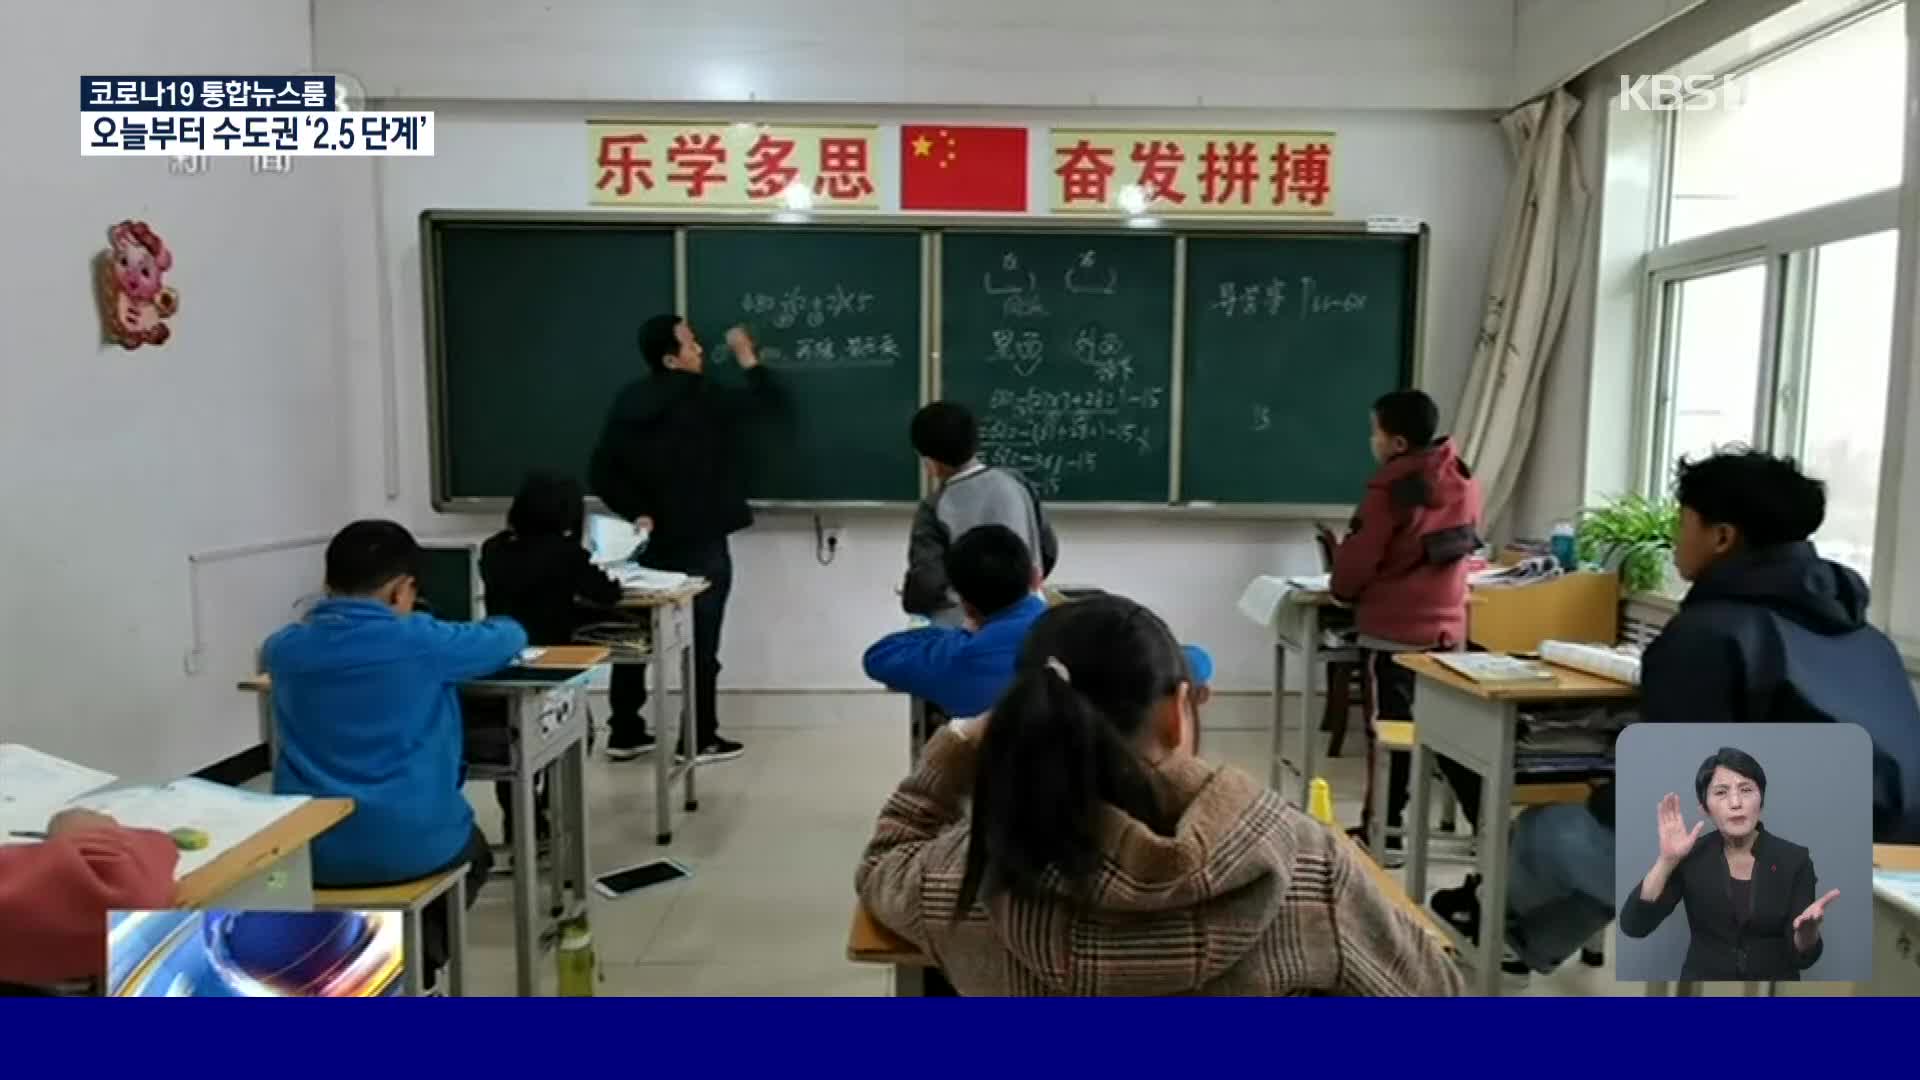 중국 유일의 에이즈 환아를 위한 학교 